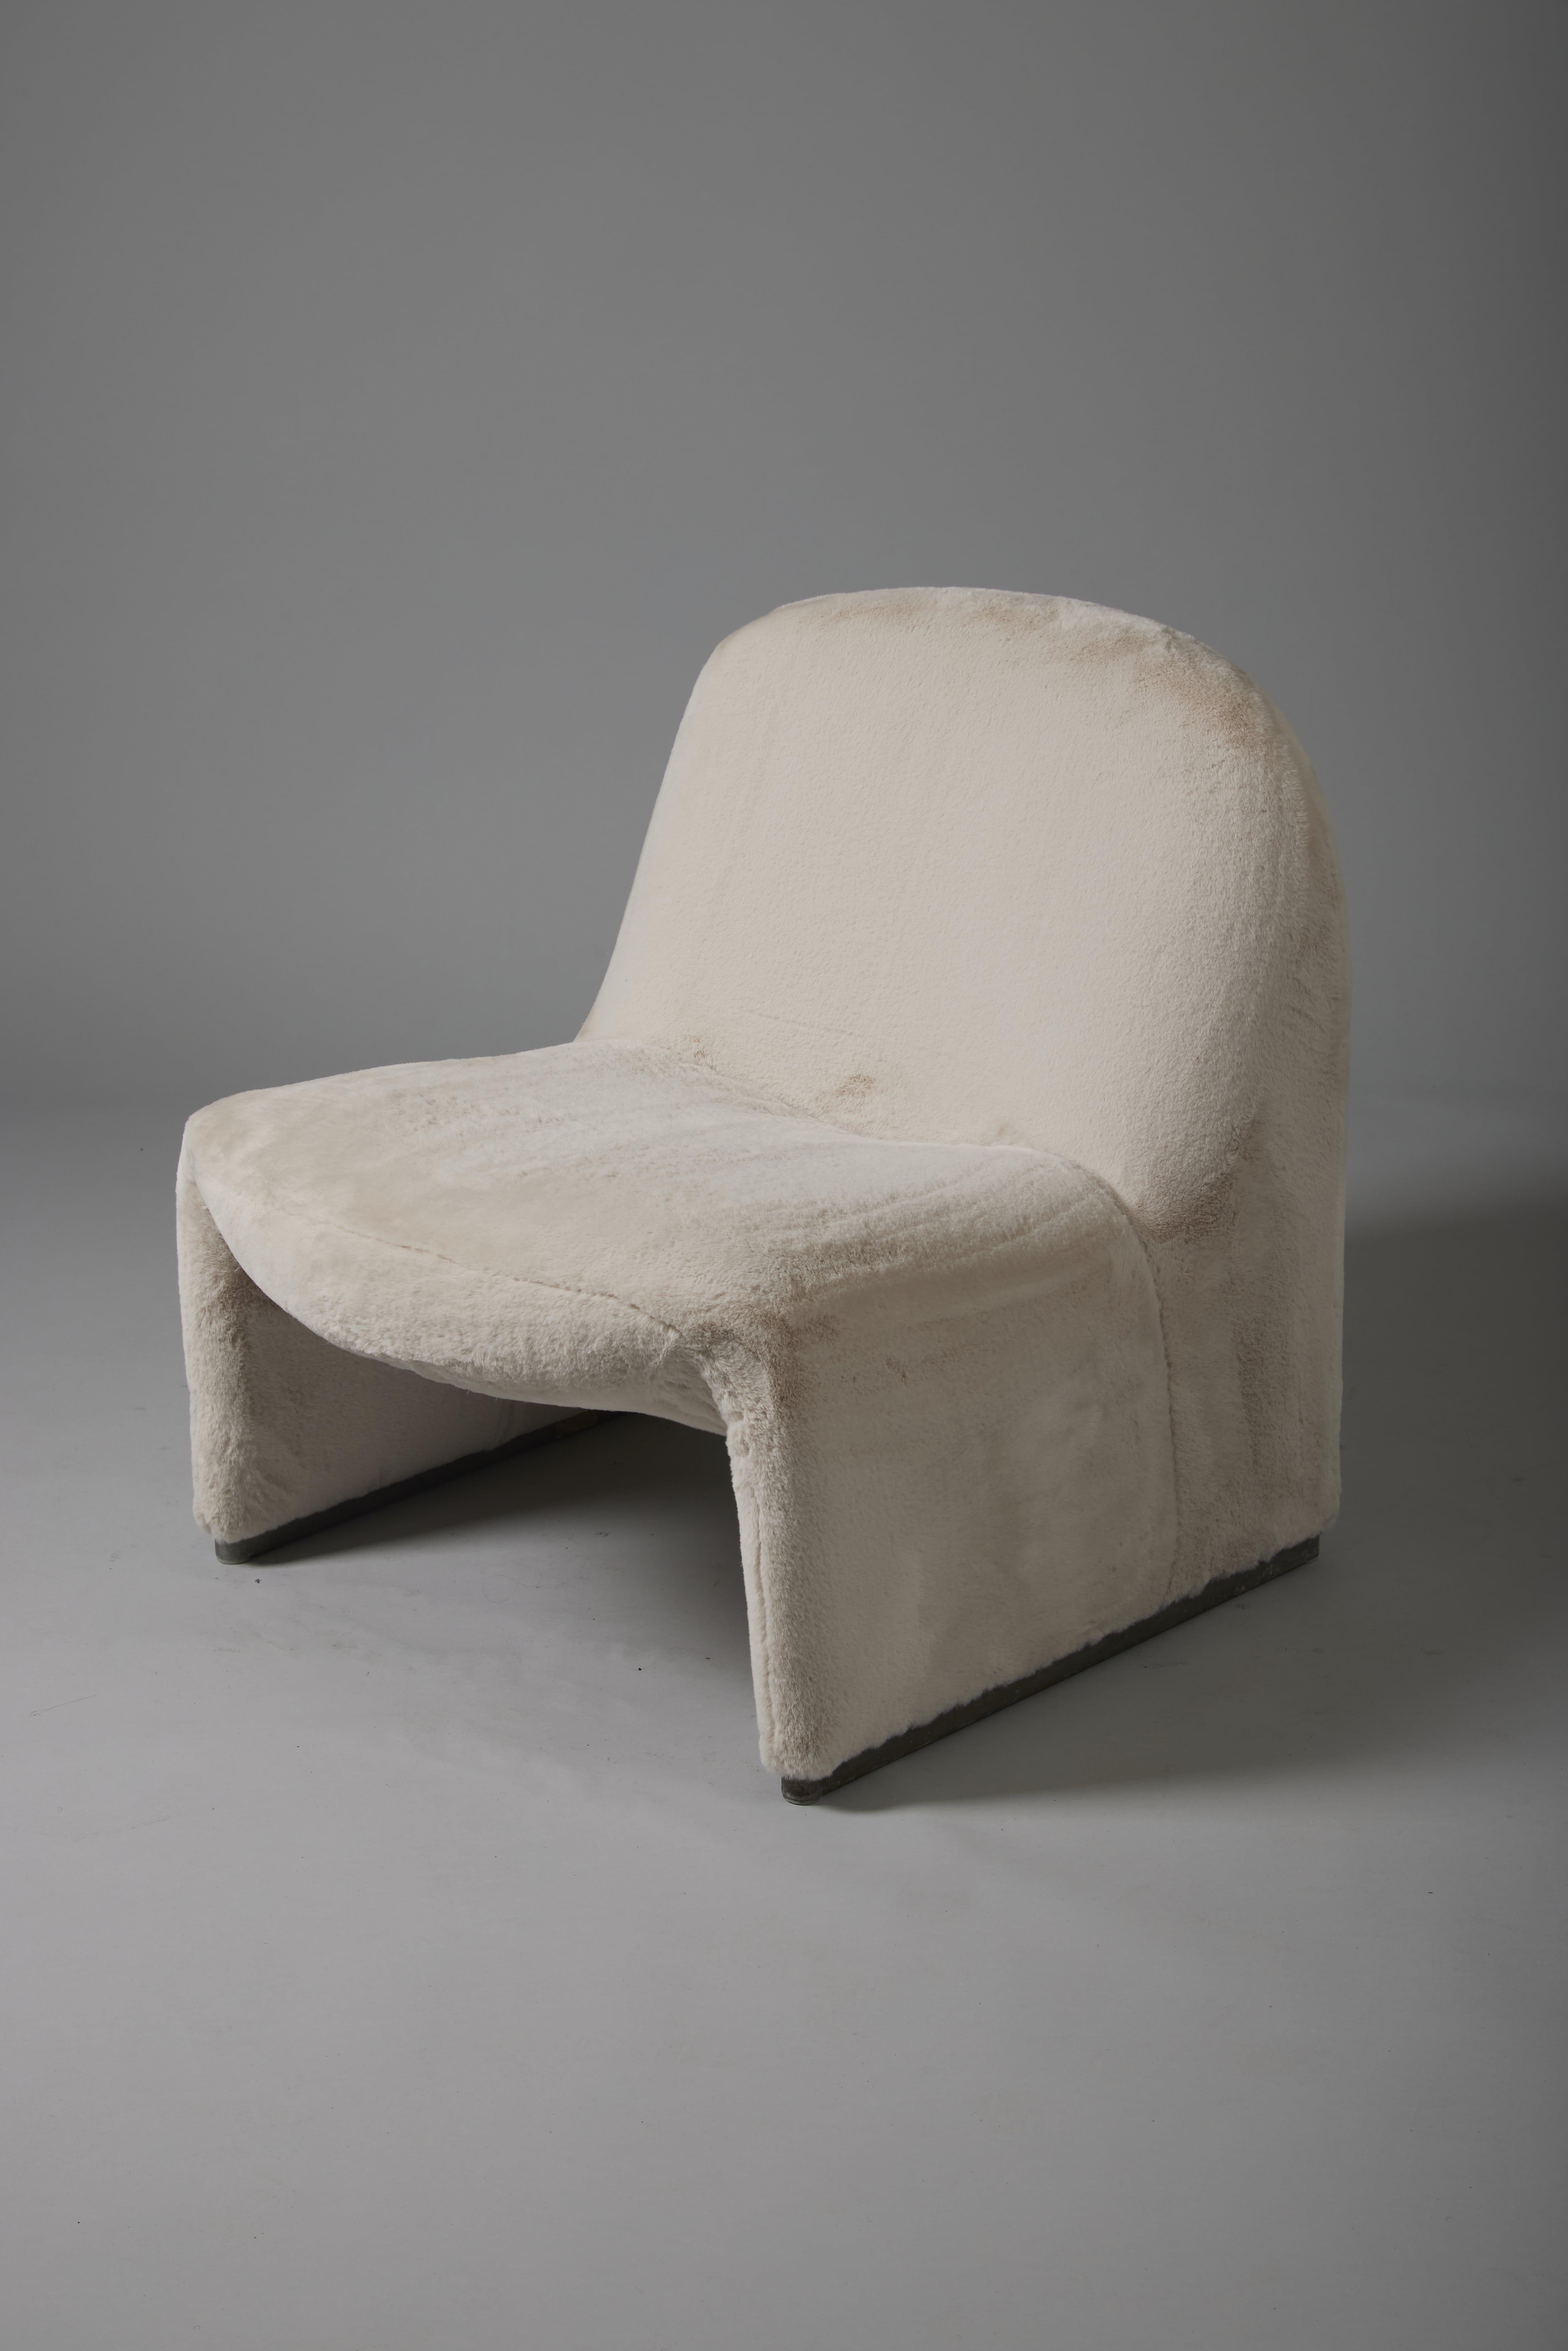 Sessel Alky des italienischen Designers Giancarlo Piretti für Artifort, 1970er Jahre. Die Struktur ist mit thermogeformtem Schaumstoff überzogen, und der Sockel ist aus Aluminium gefertigt. Guter Zustand. Dieser Sessel wurde mit einem hochwertigen